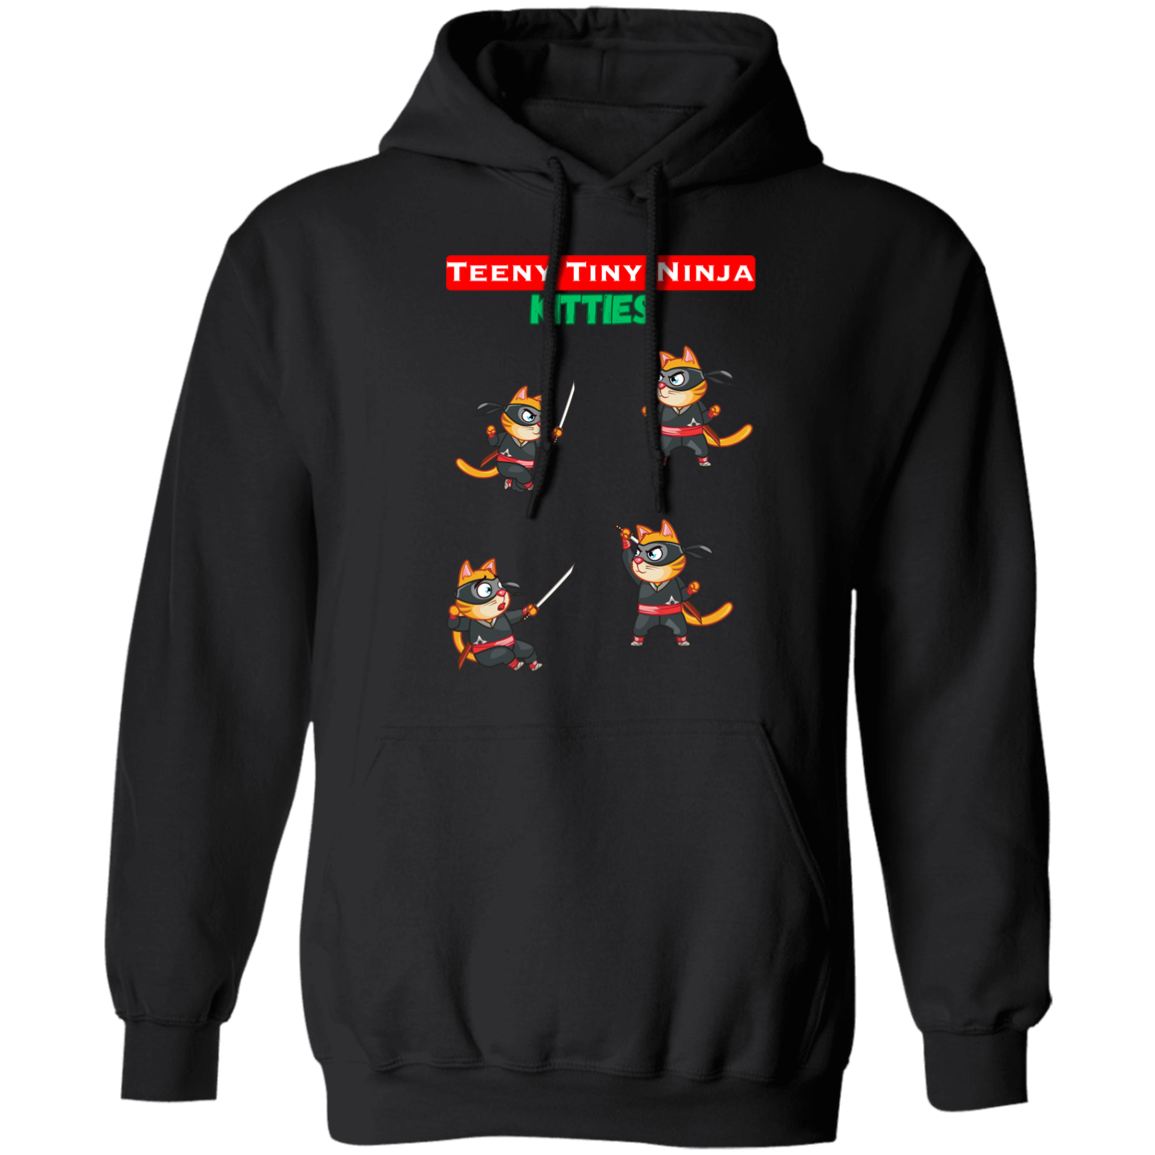 Teeny Tiny Ninja Kitties - Unisex Pullover Hoodie